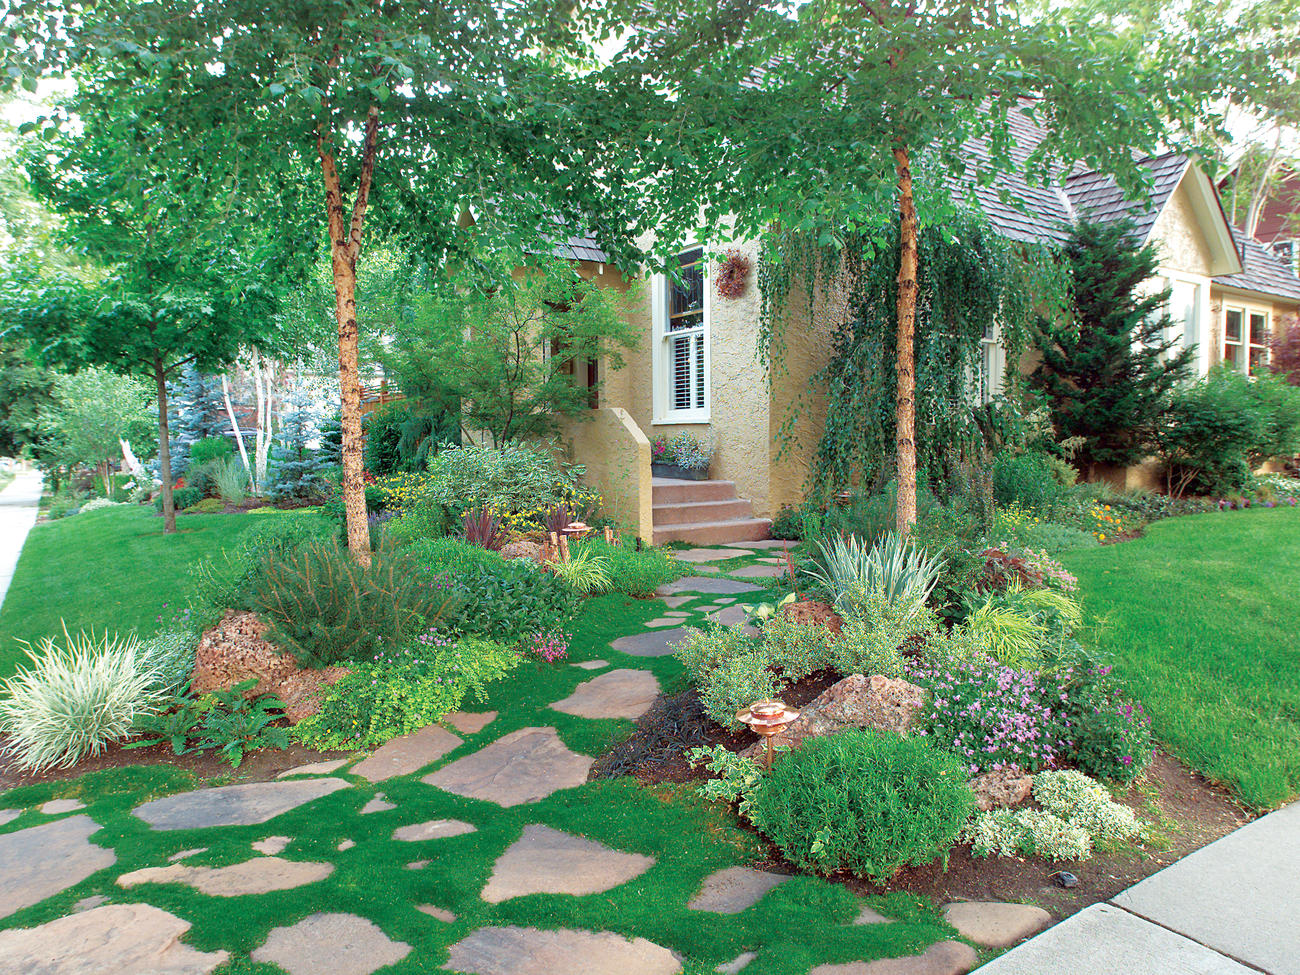 Create a Moss Garden